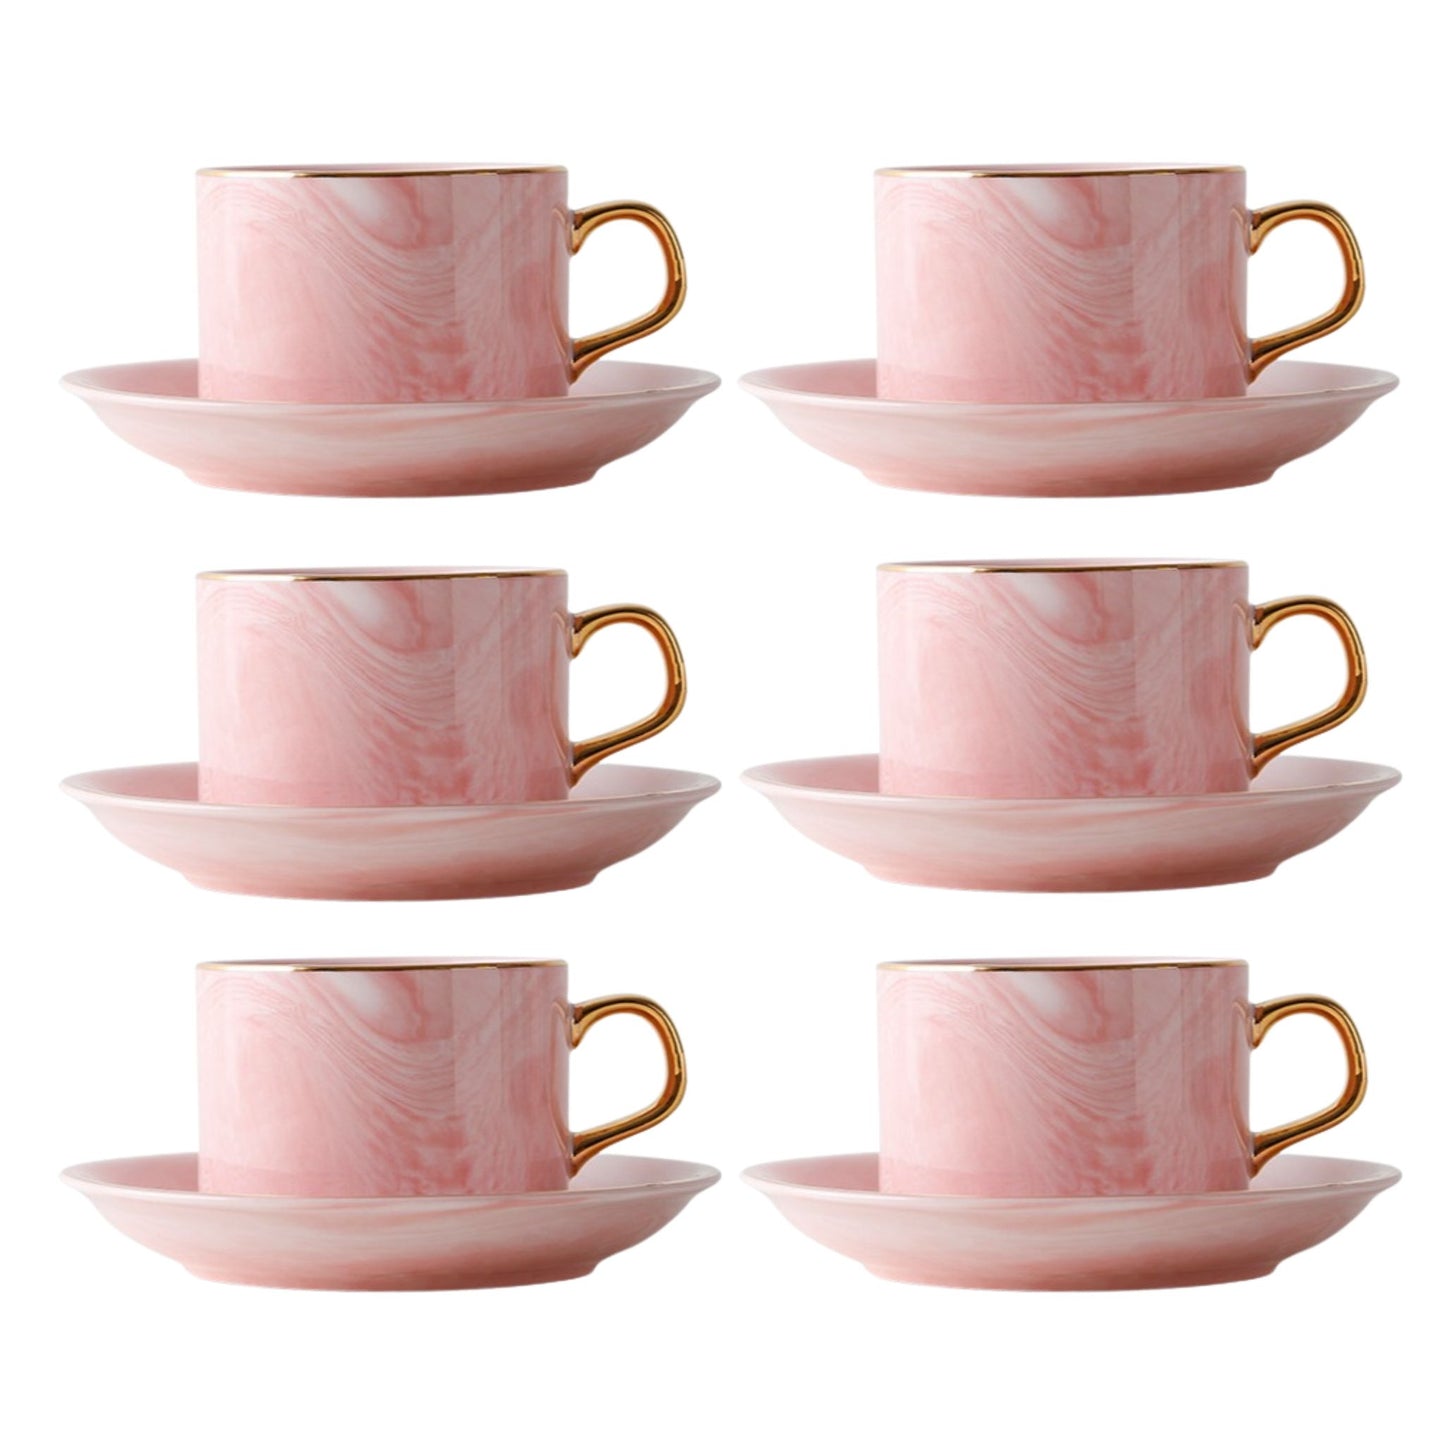 marmor-tassen-set-untertasse-rosa-goldener-henkel-6er-set